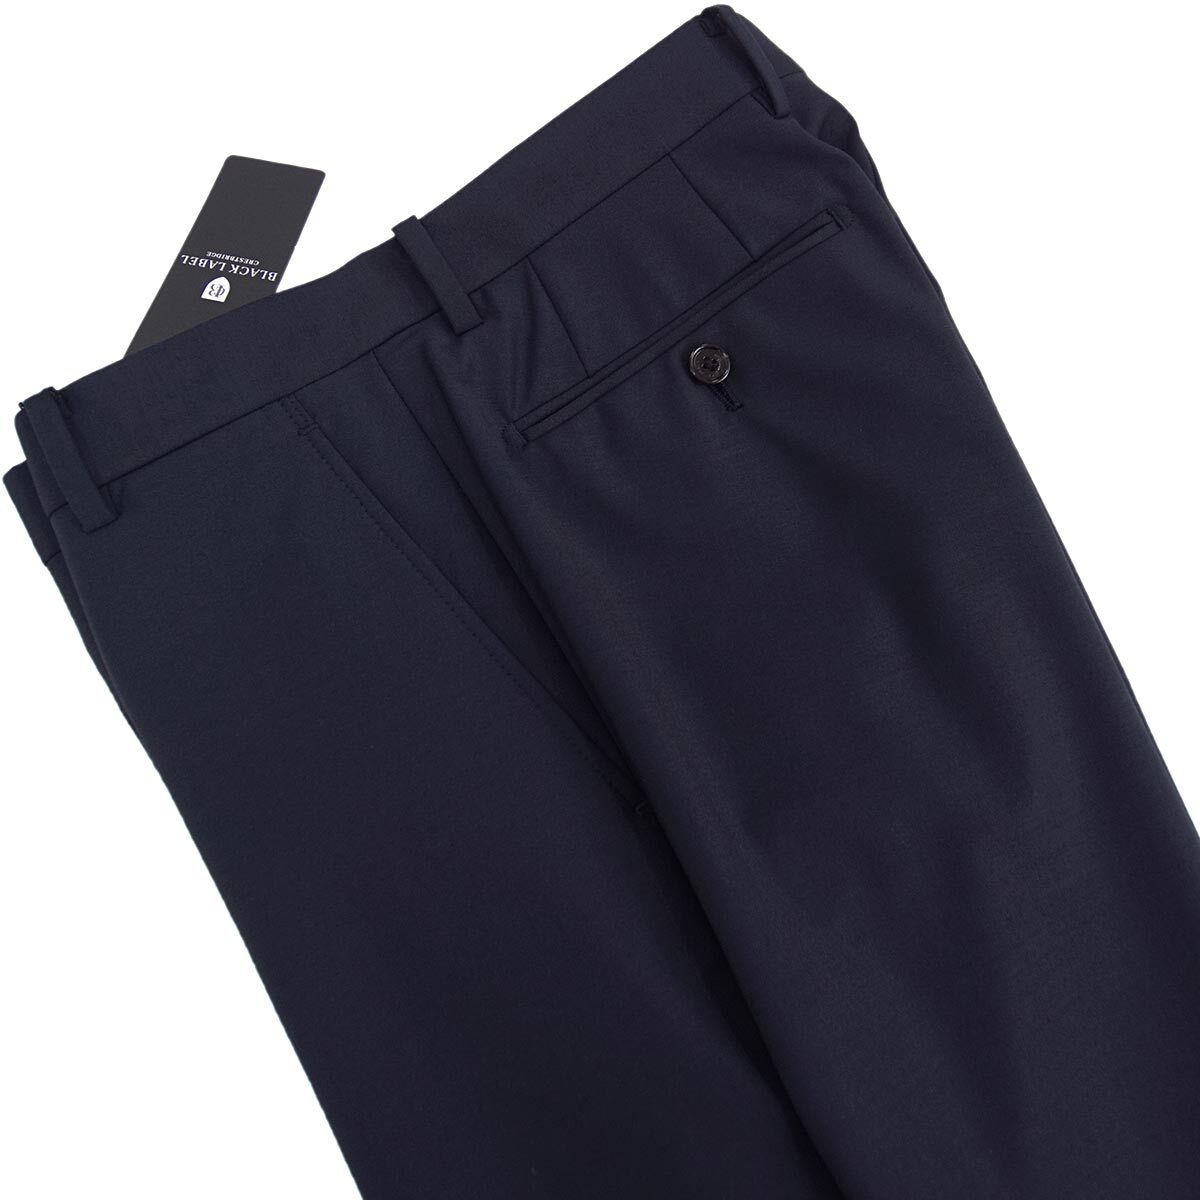 [ новый товар ] обычная цена 27500 иен Black Label k rest Bridge [M/79cm] весна лето бизнес брюки тонкий Silhouette превосходный стрейч . помятость обработка темно-синий 